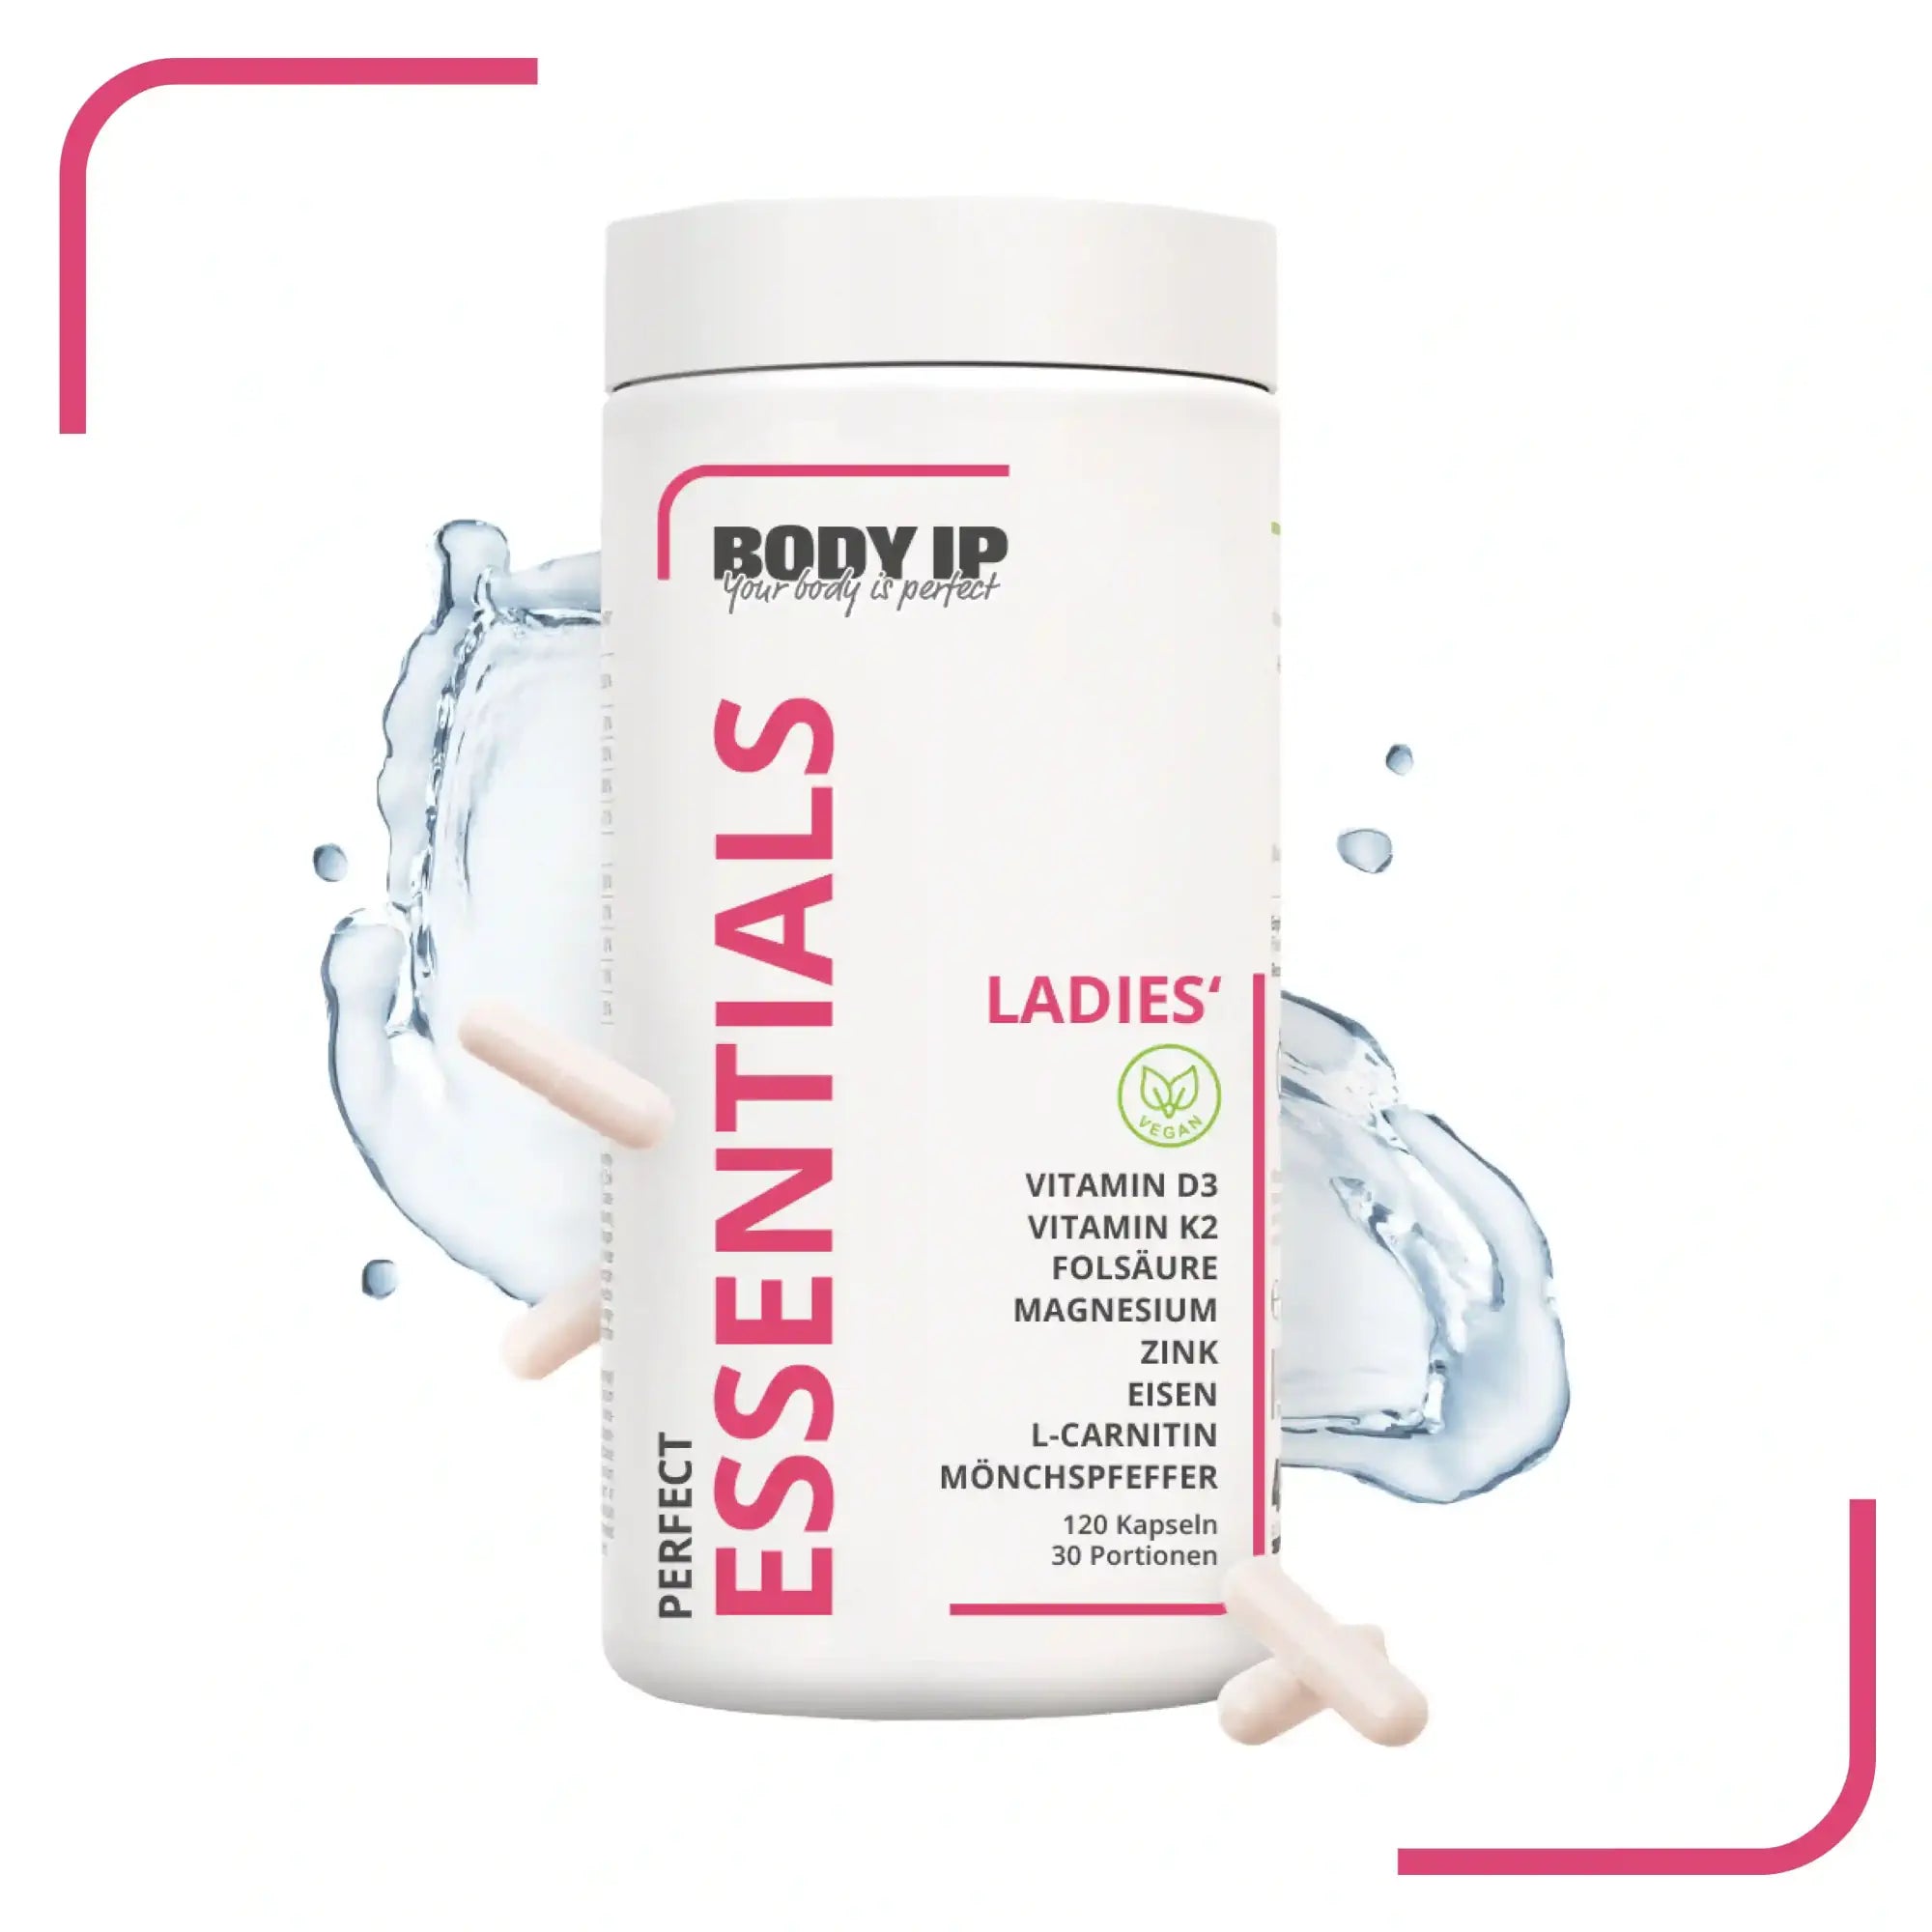 Ladies Essentials Vitamine und Mineralstoffe für Frauen